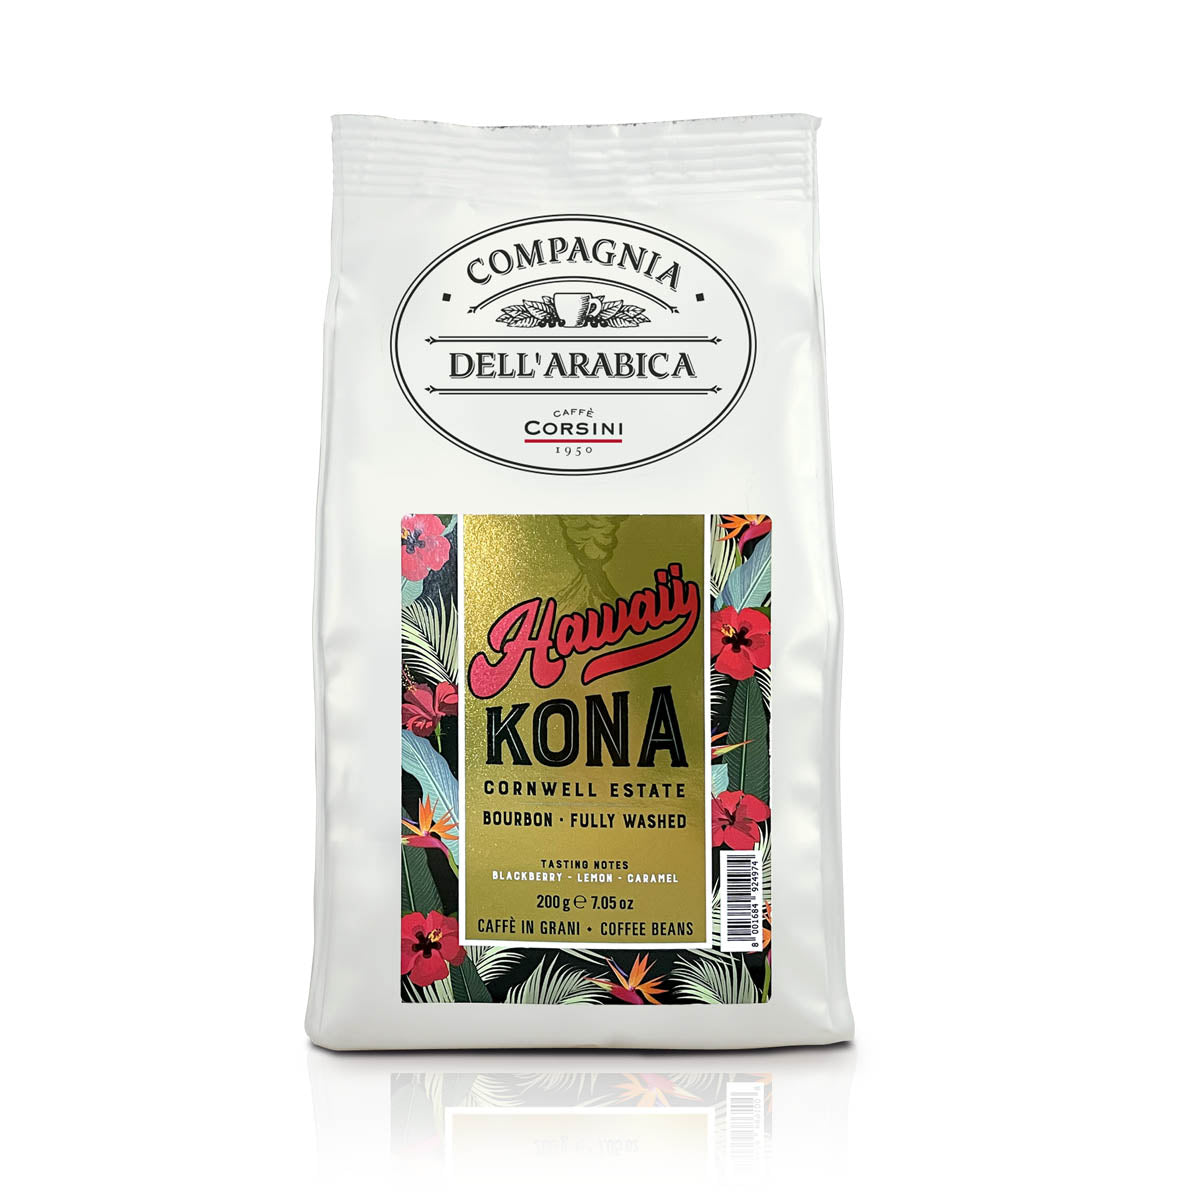 Coffee beans | Hawaii Kona Cornwell Estate | 100% Arabica | 200g | Box of 12 packs